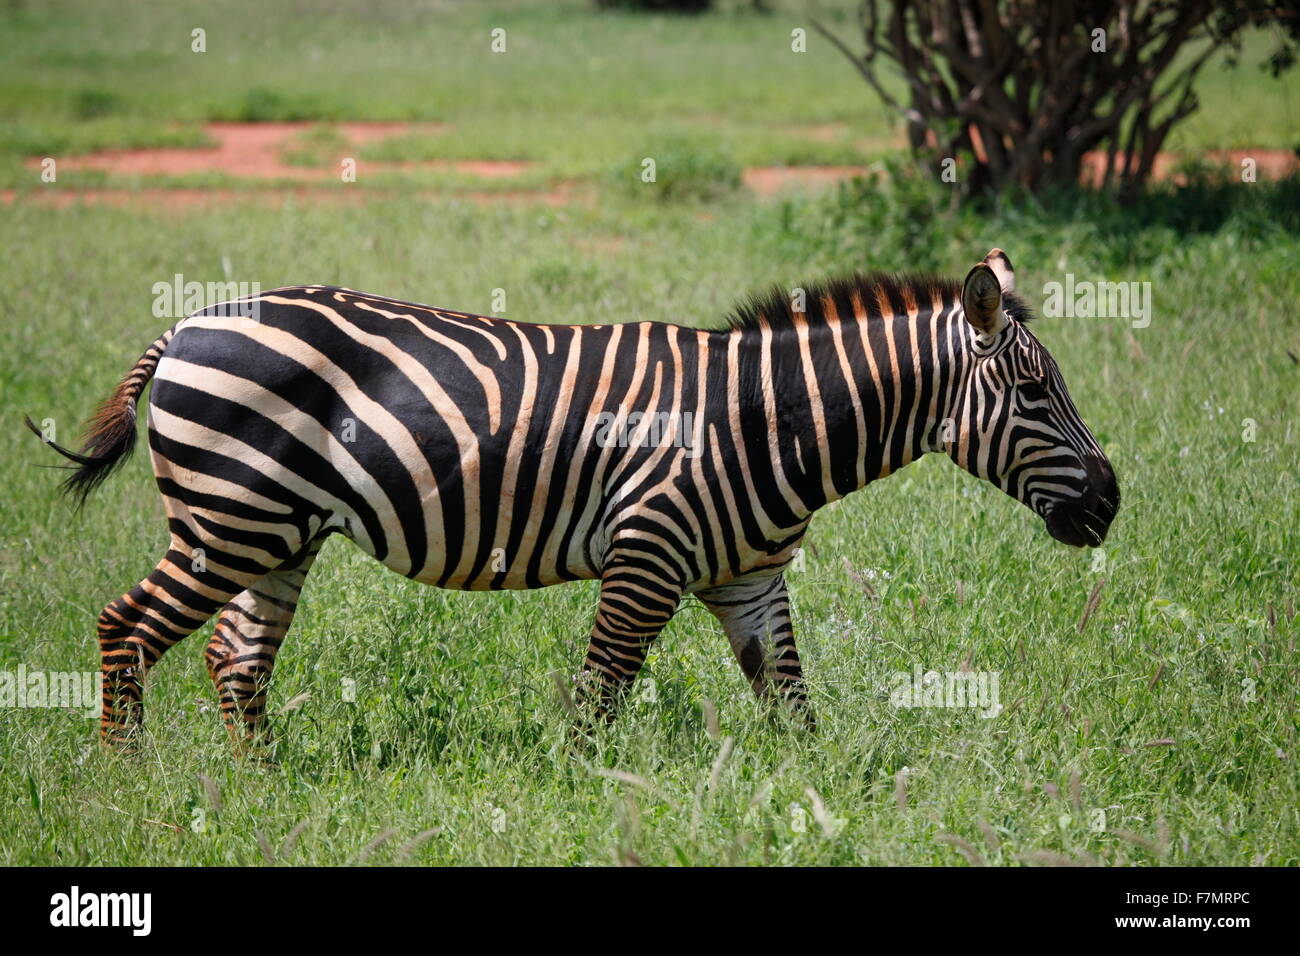 zebra in tsavo east national park kenya Stock Photo